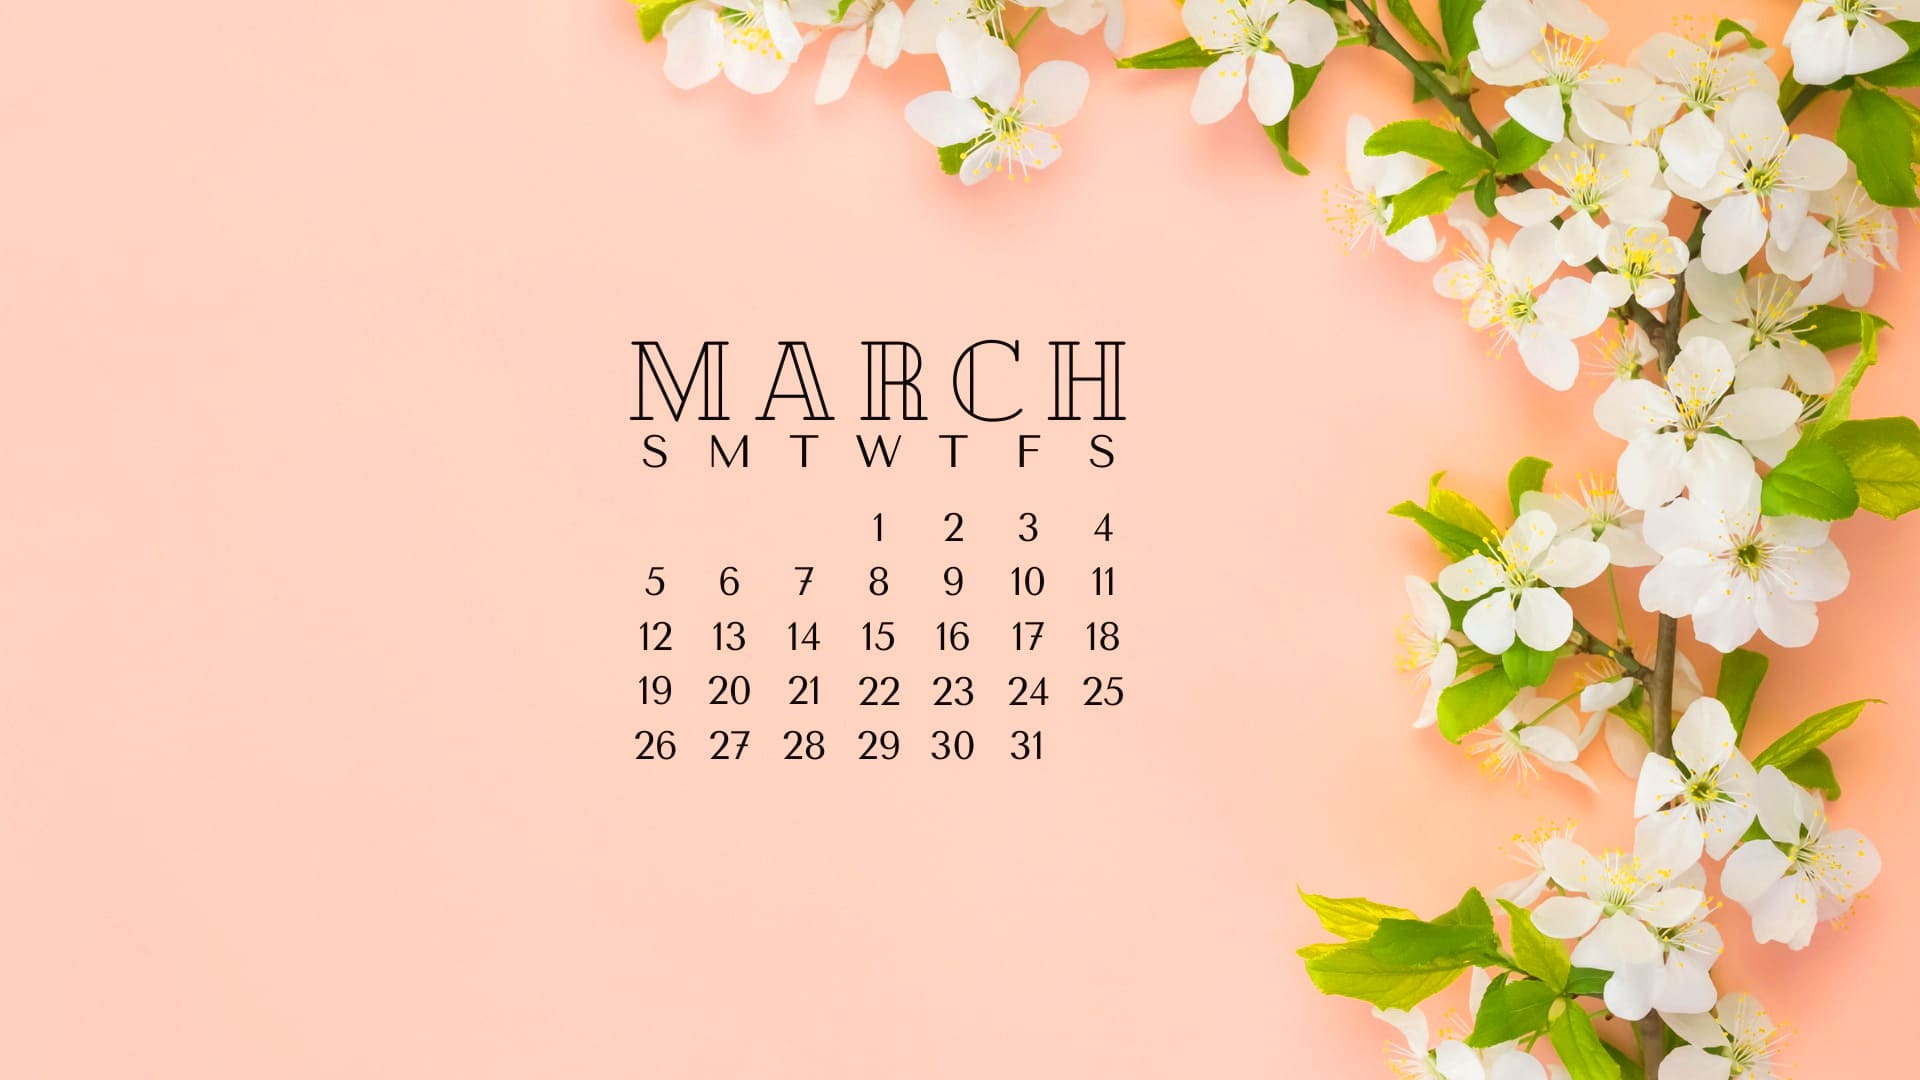 March Calendar 2023 Wallpapers